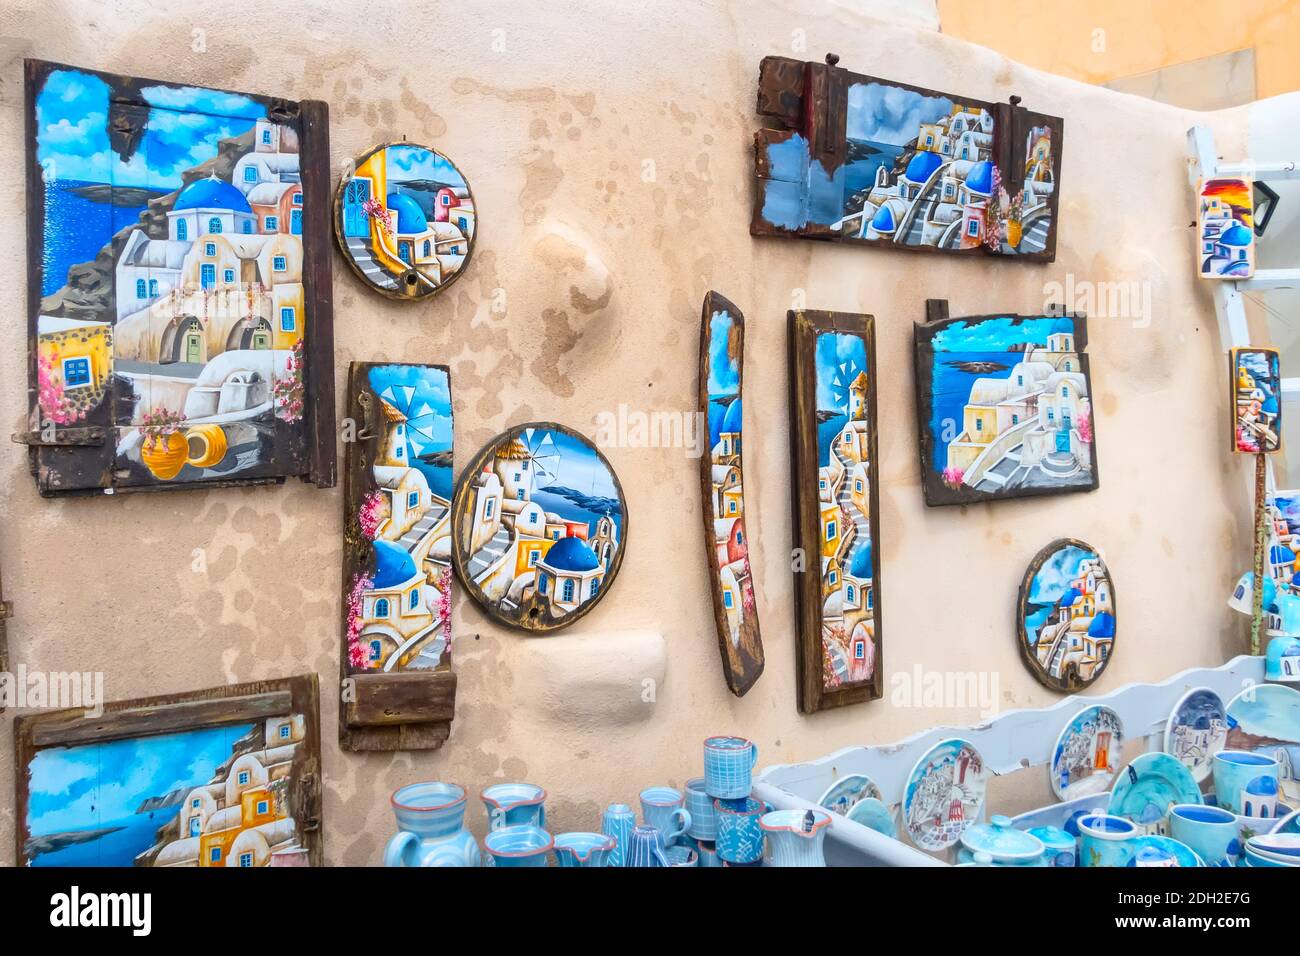 Gift souvenir shop, Santorini island in Greece Stock Photo